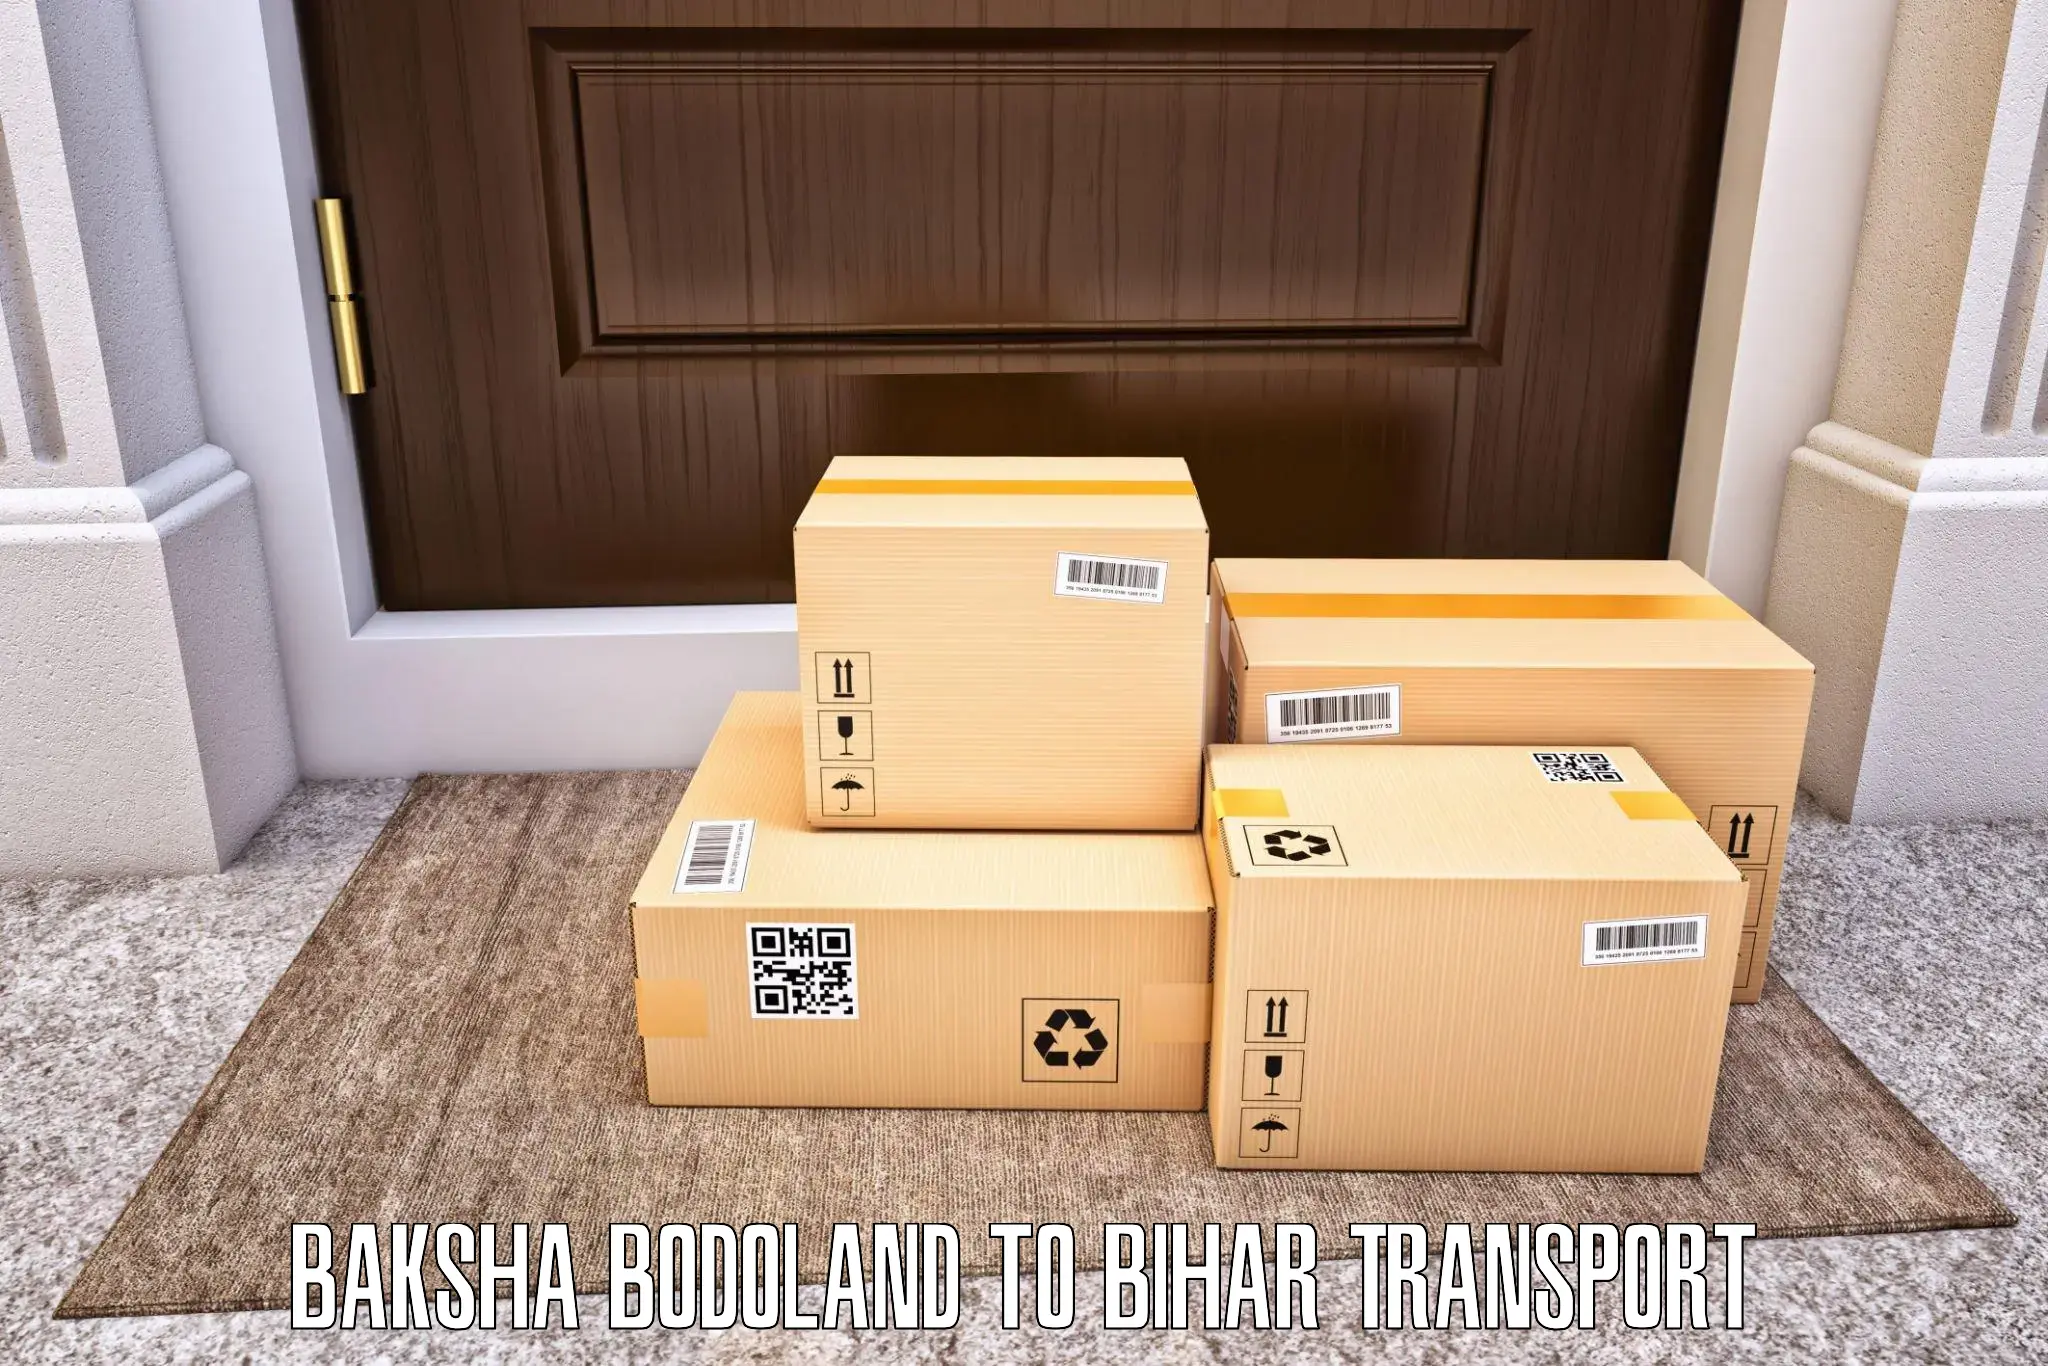 Furniture transport service Baksha Bodoland to Khutauna